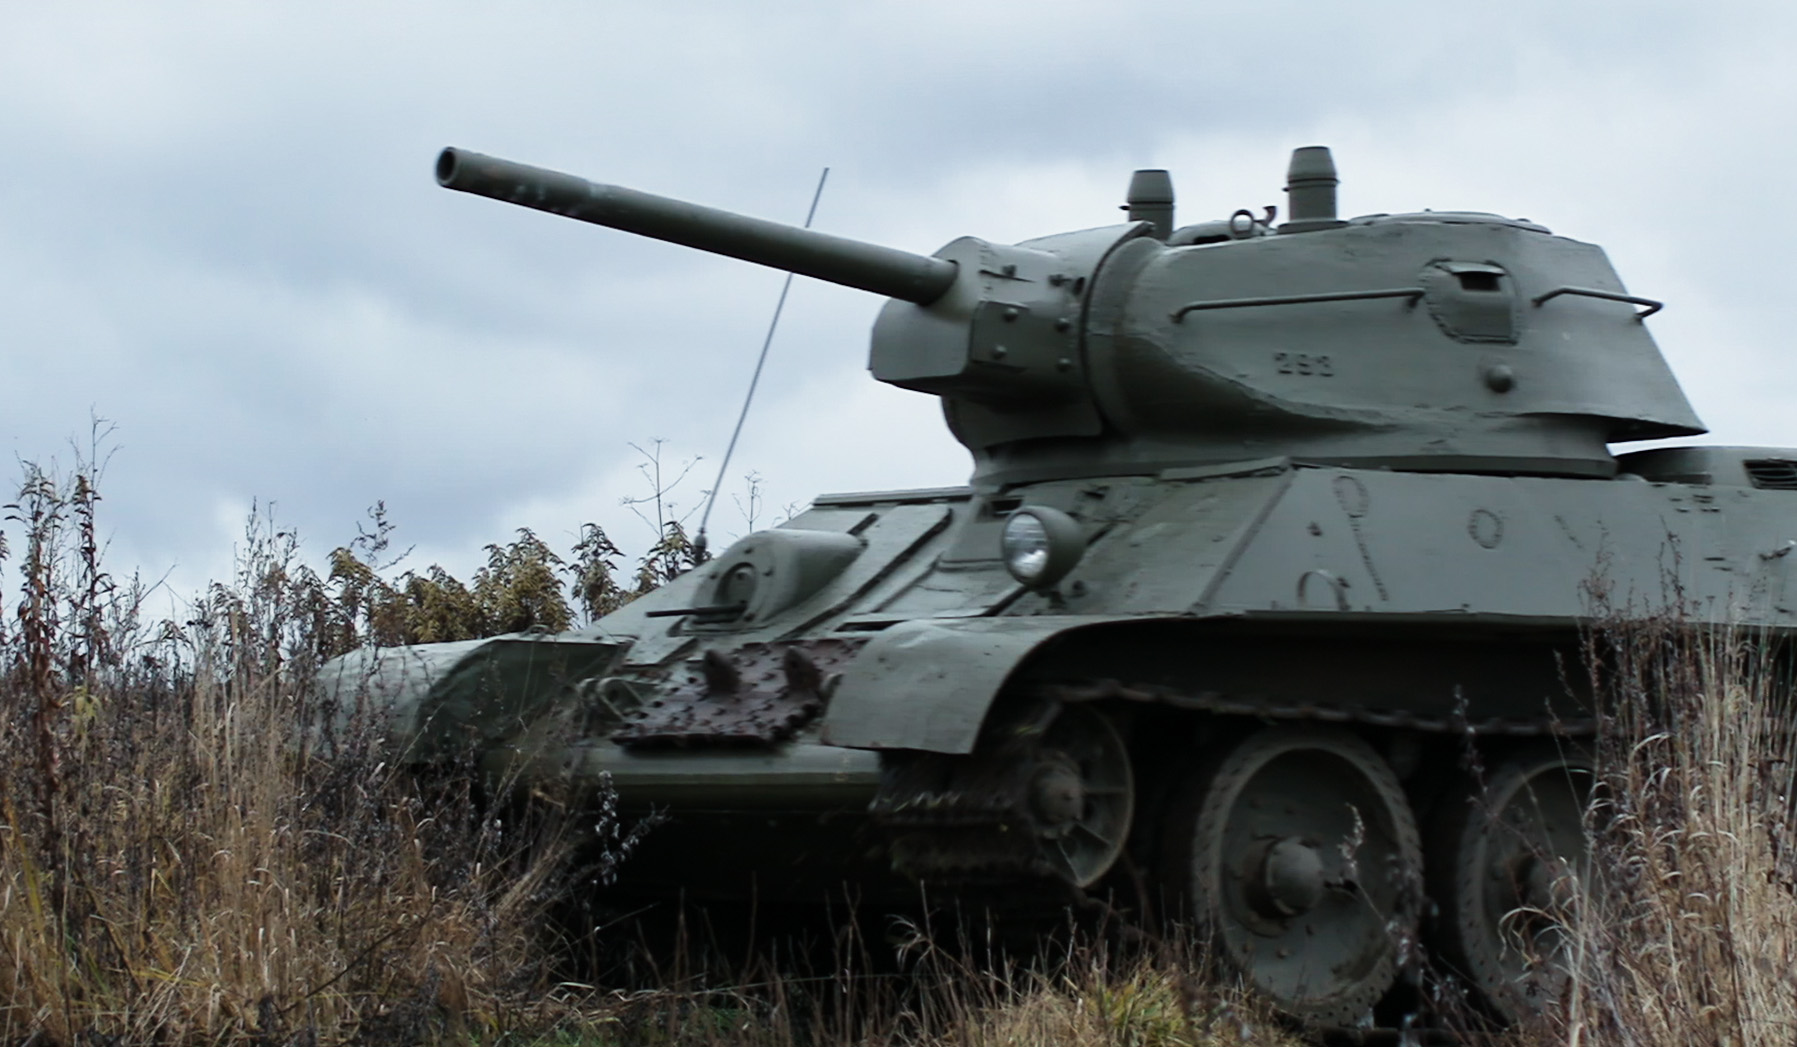 T-34 